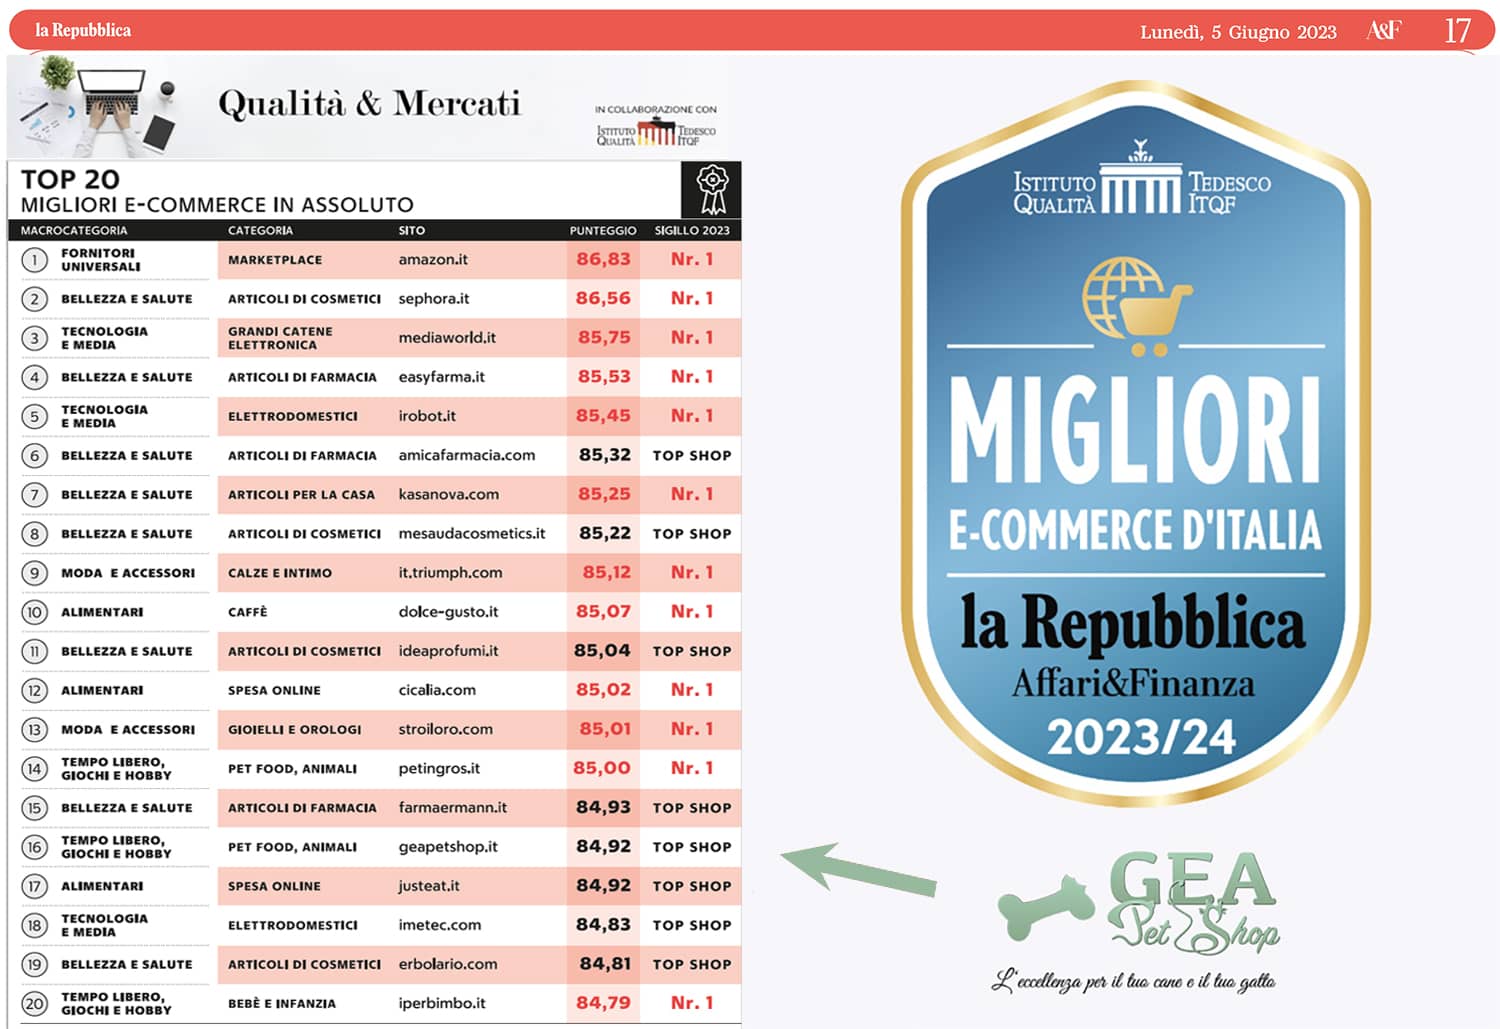 top 20 ecommerce italia gea pet shop la repubblica itqf